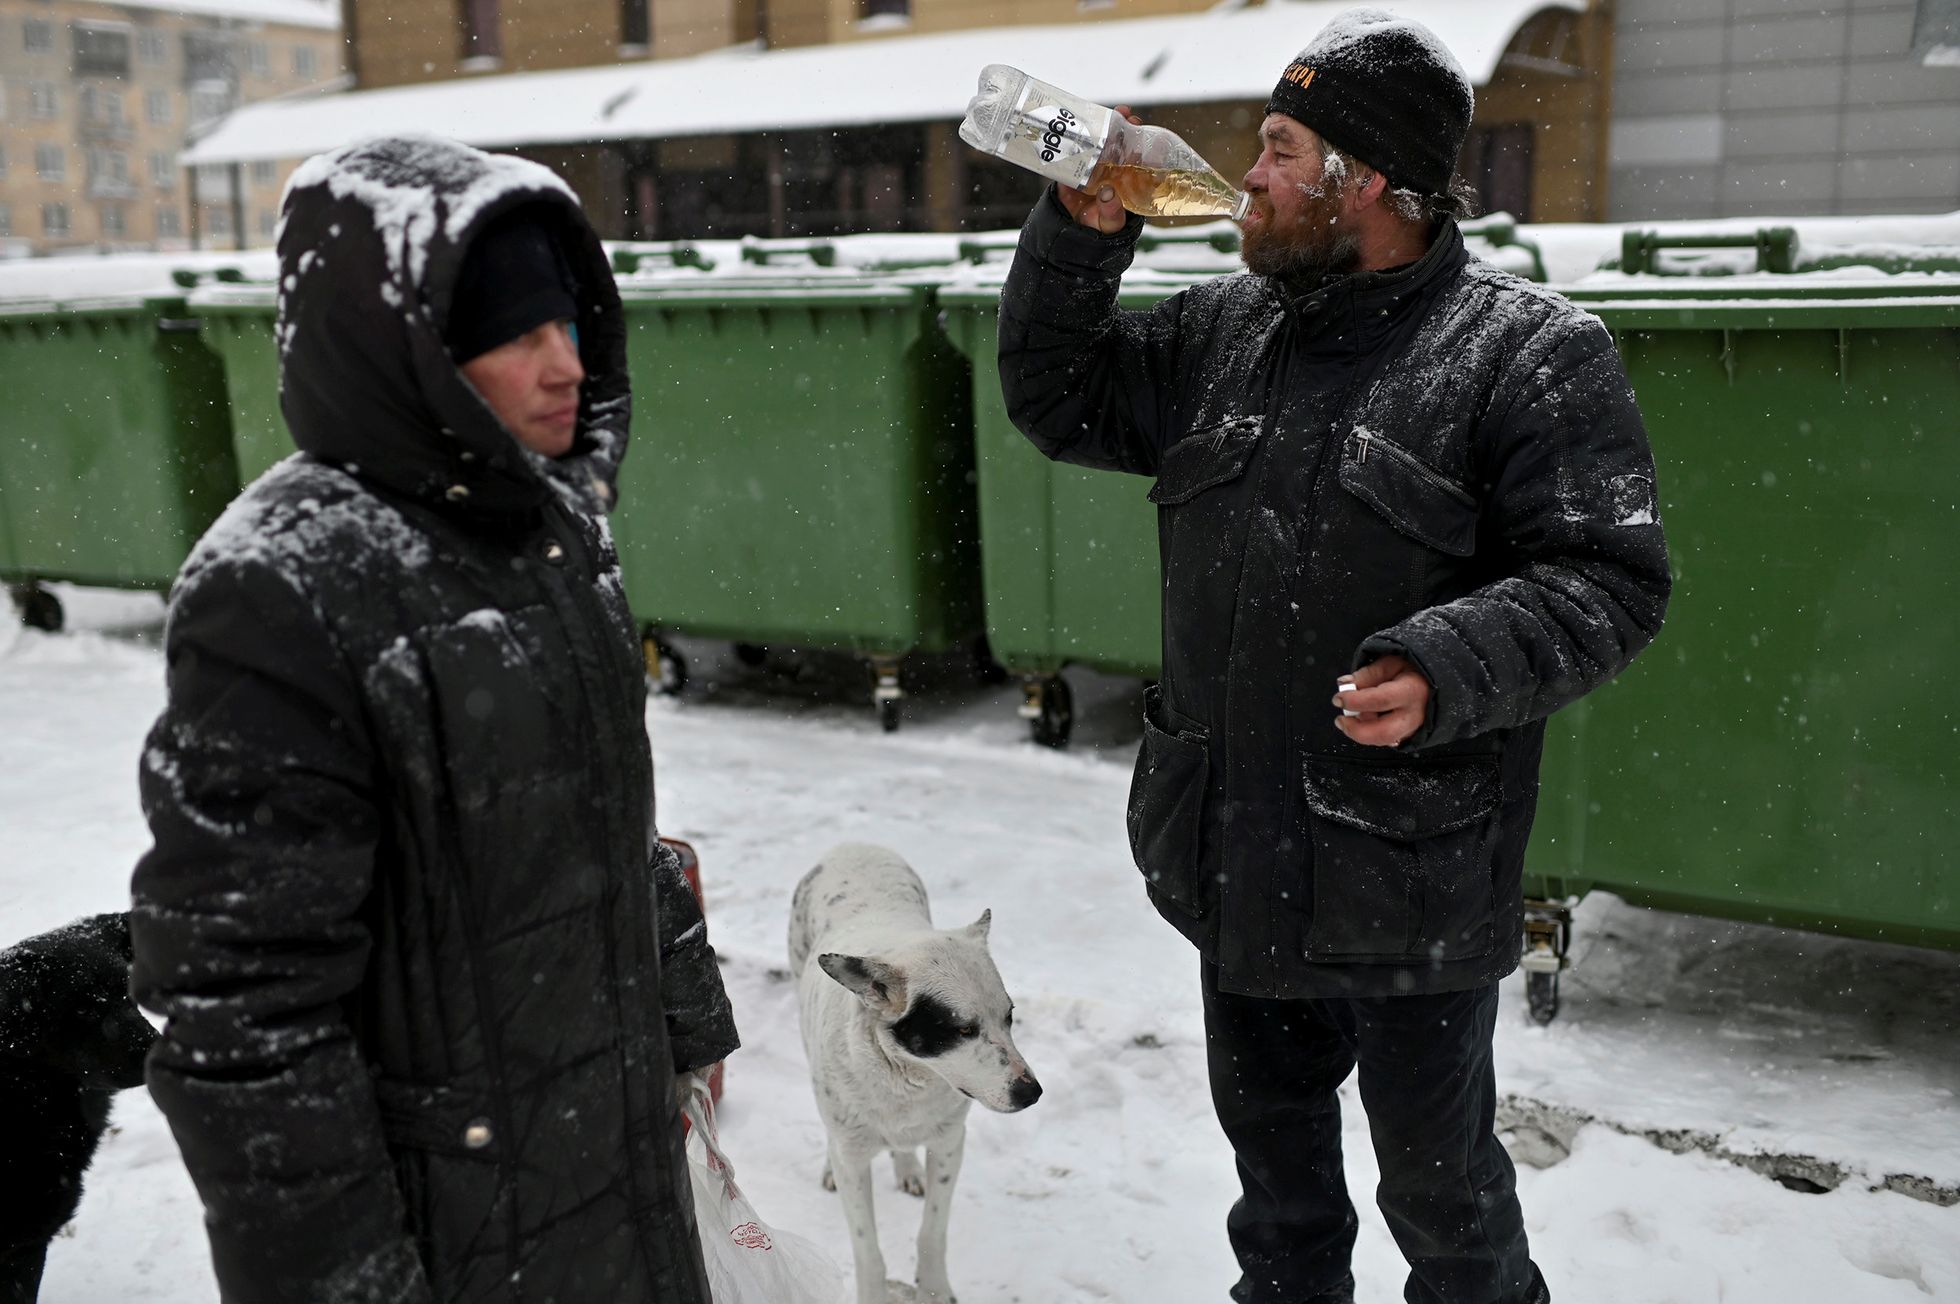 Алексей Вергунов (справа) находит в мусорнике недопитую бутылку и опустошает ее. Рядом с ним его приятель Александр.